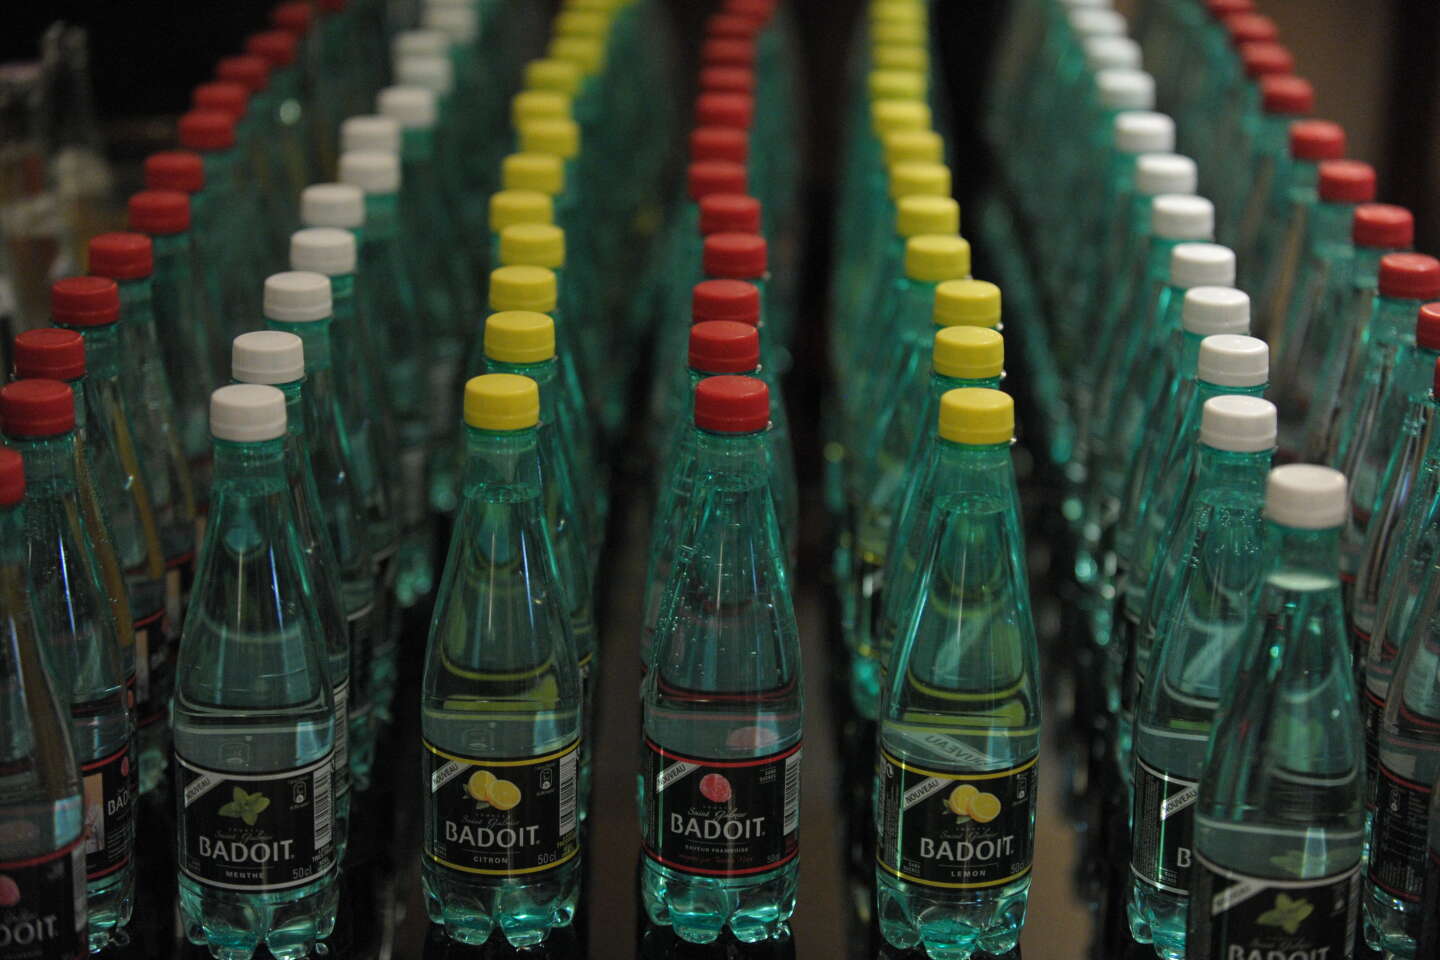 Actualités - La distribution gratuite de bouteilles en plastique interdite  en entreprise